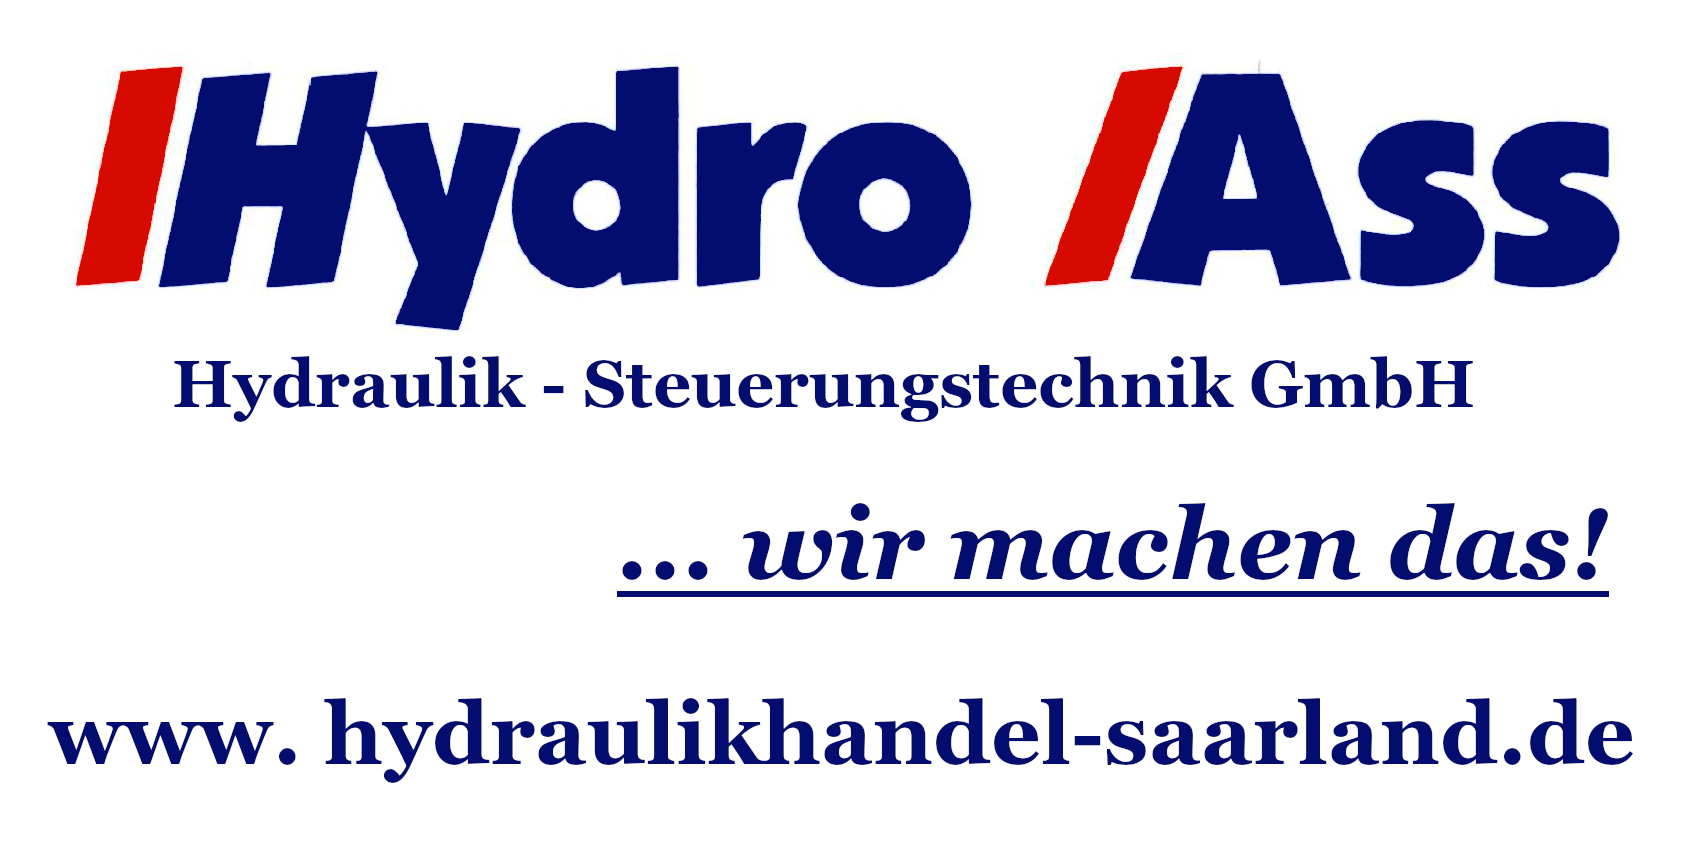 Hydraulik im Saarland: Aggregate, Ventile, Zylinder, Pumpen, Schläuche, Handel, Service & Webshop